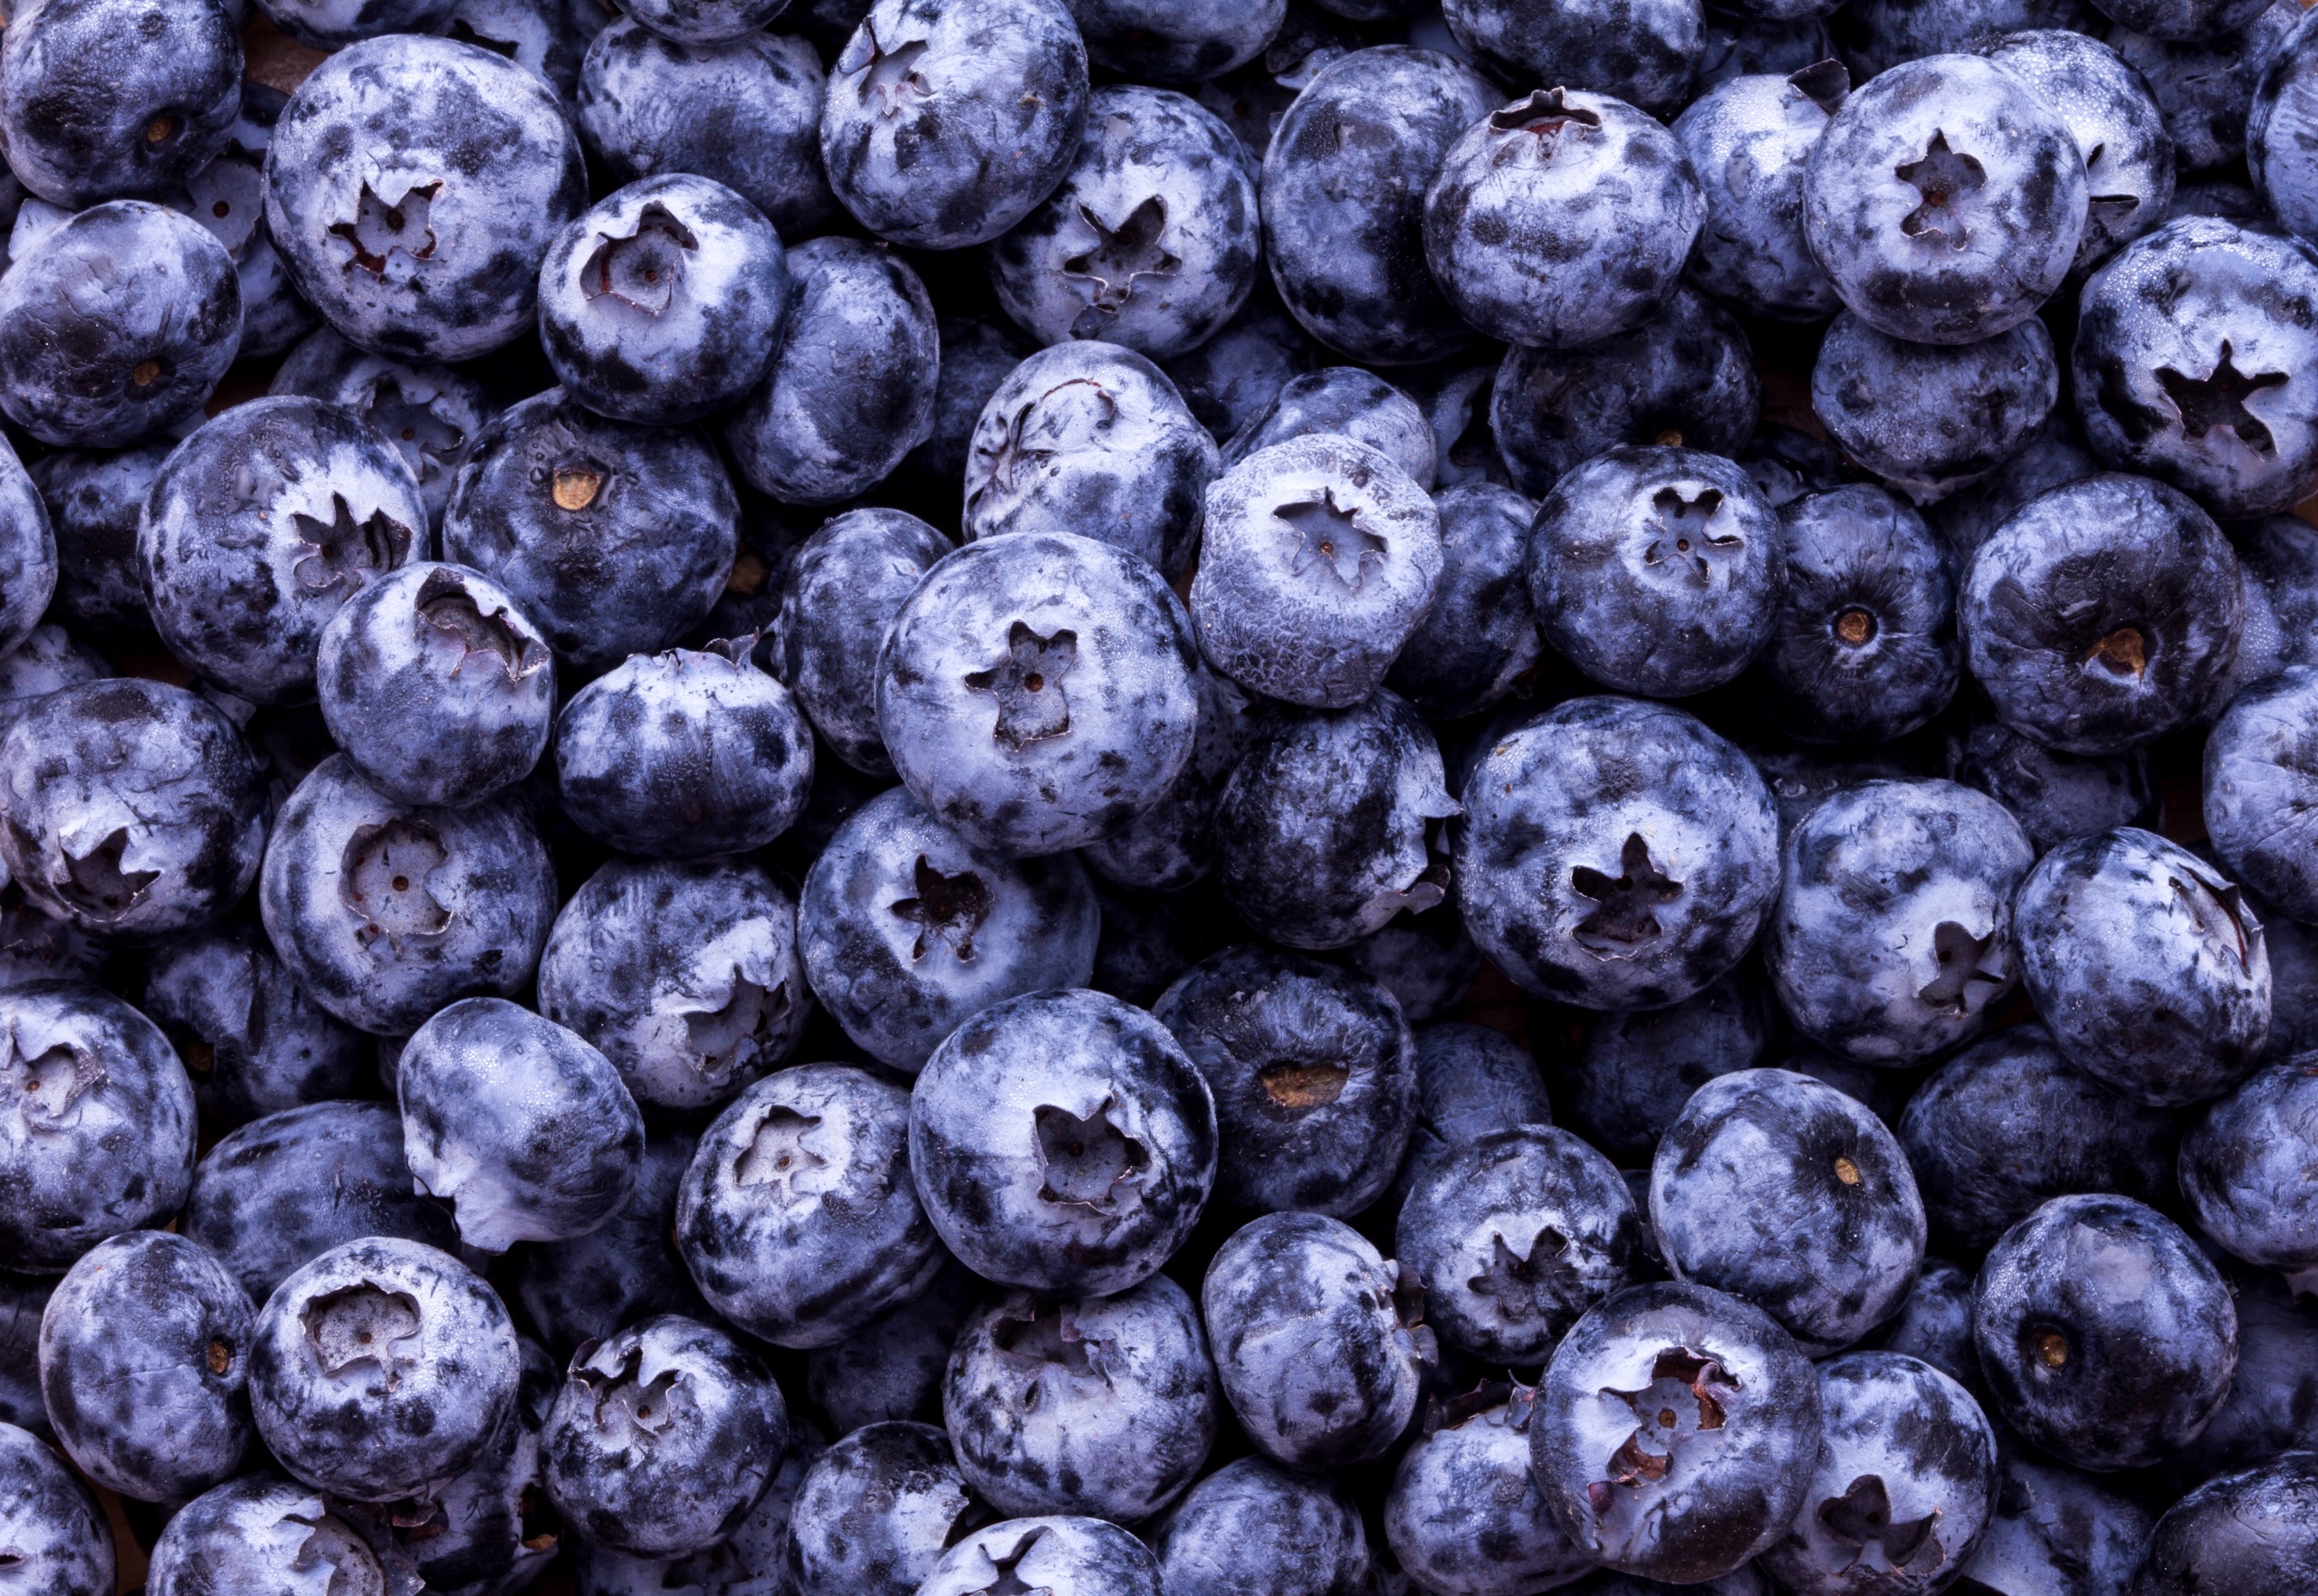 General 2560x1763 food fruit berries blueberries